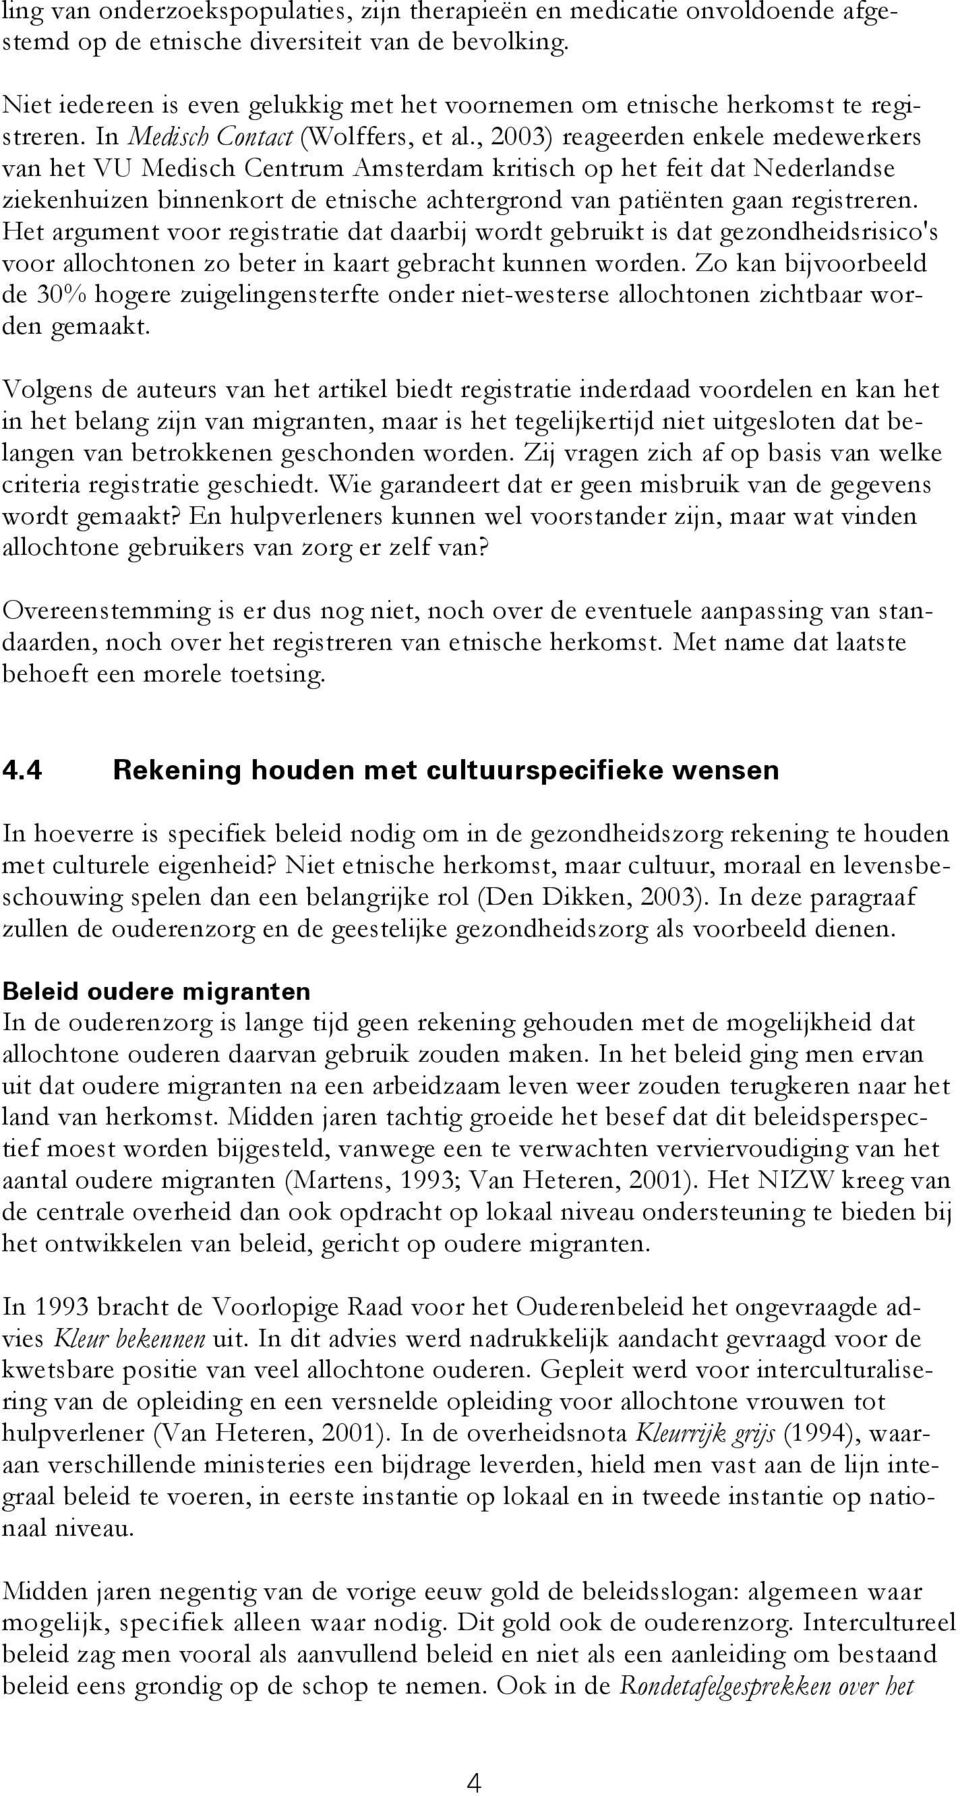 , 2003) reageerden enkele medewerkers van het VU Medisch Centrum Amsterdam kritisch op het feit dat Nederlandse ziekenhuizen binnenkort de etnische achtergrond van patiënten gaan registreren.